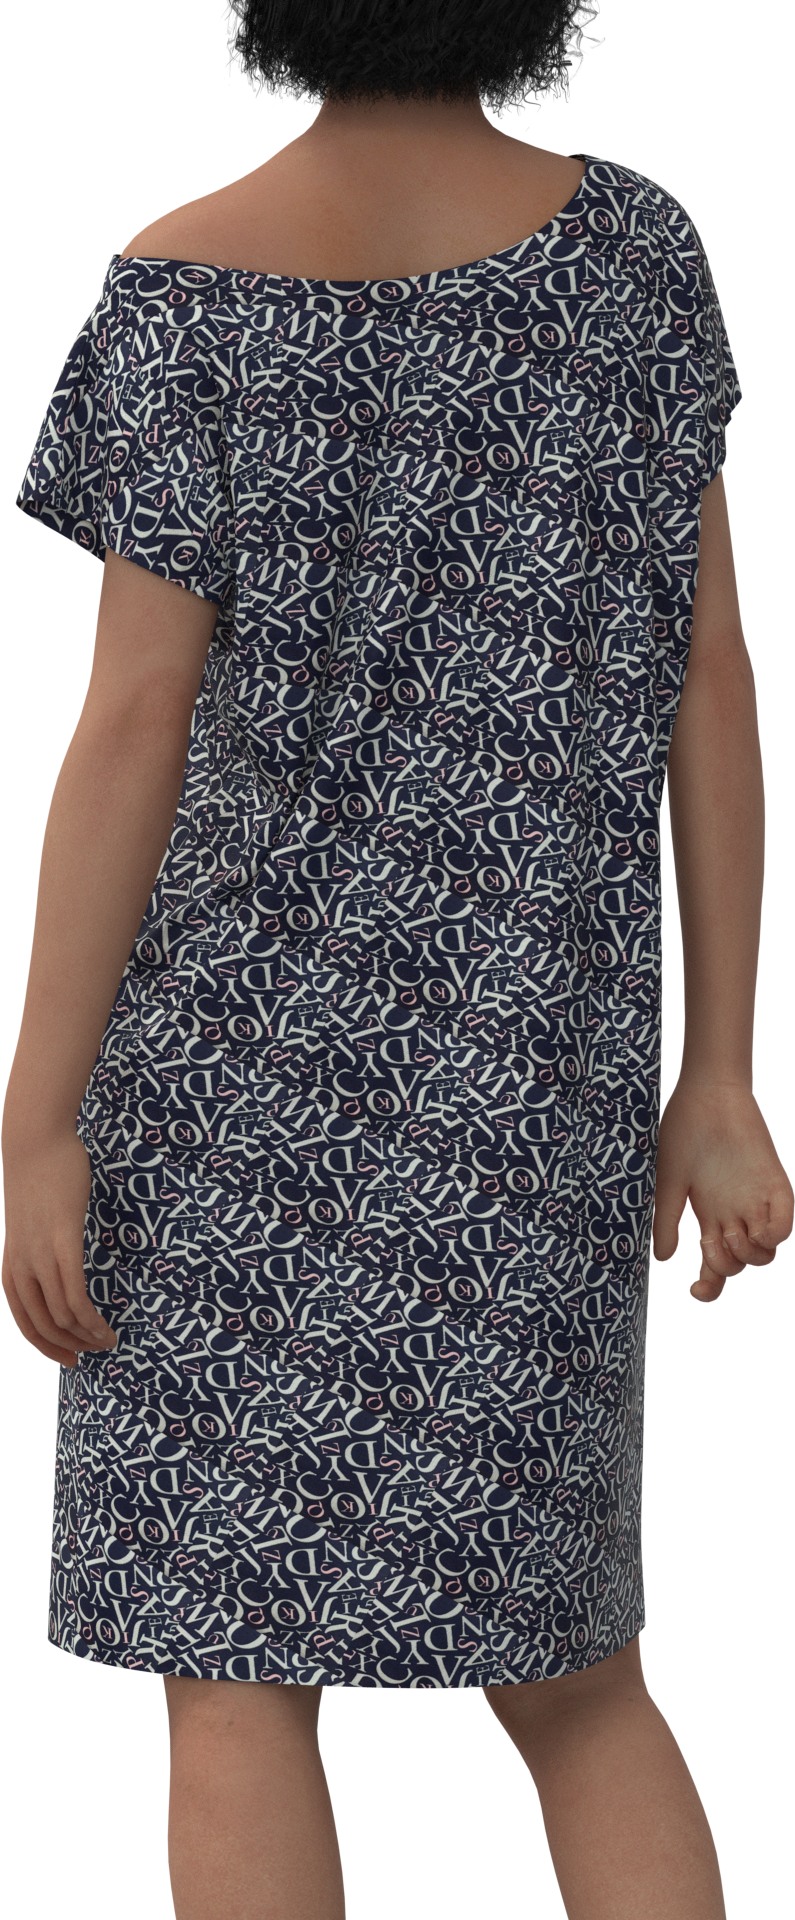 Платье туника пижама женская домашняя большие размеры с принтом буквы платье женское домашнее накидка - фотография № 2